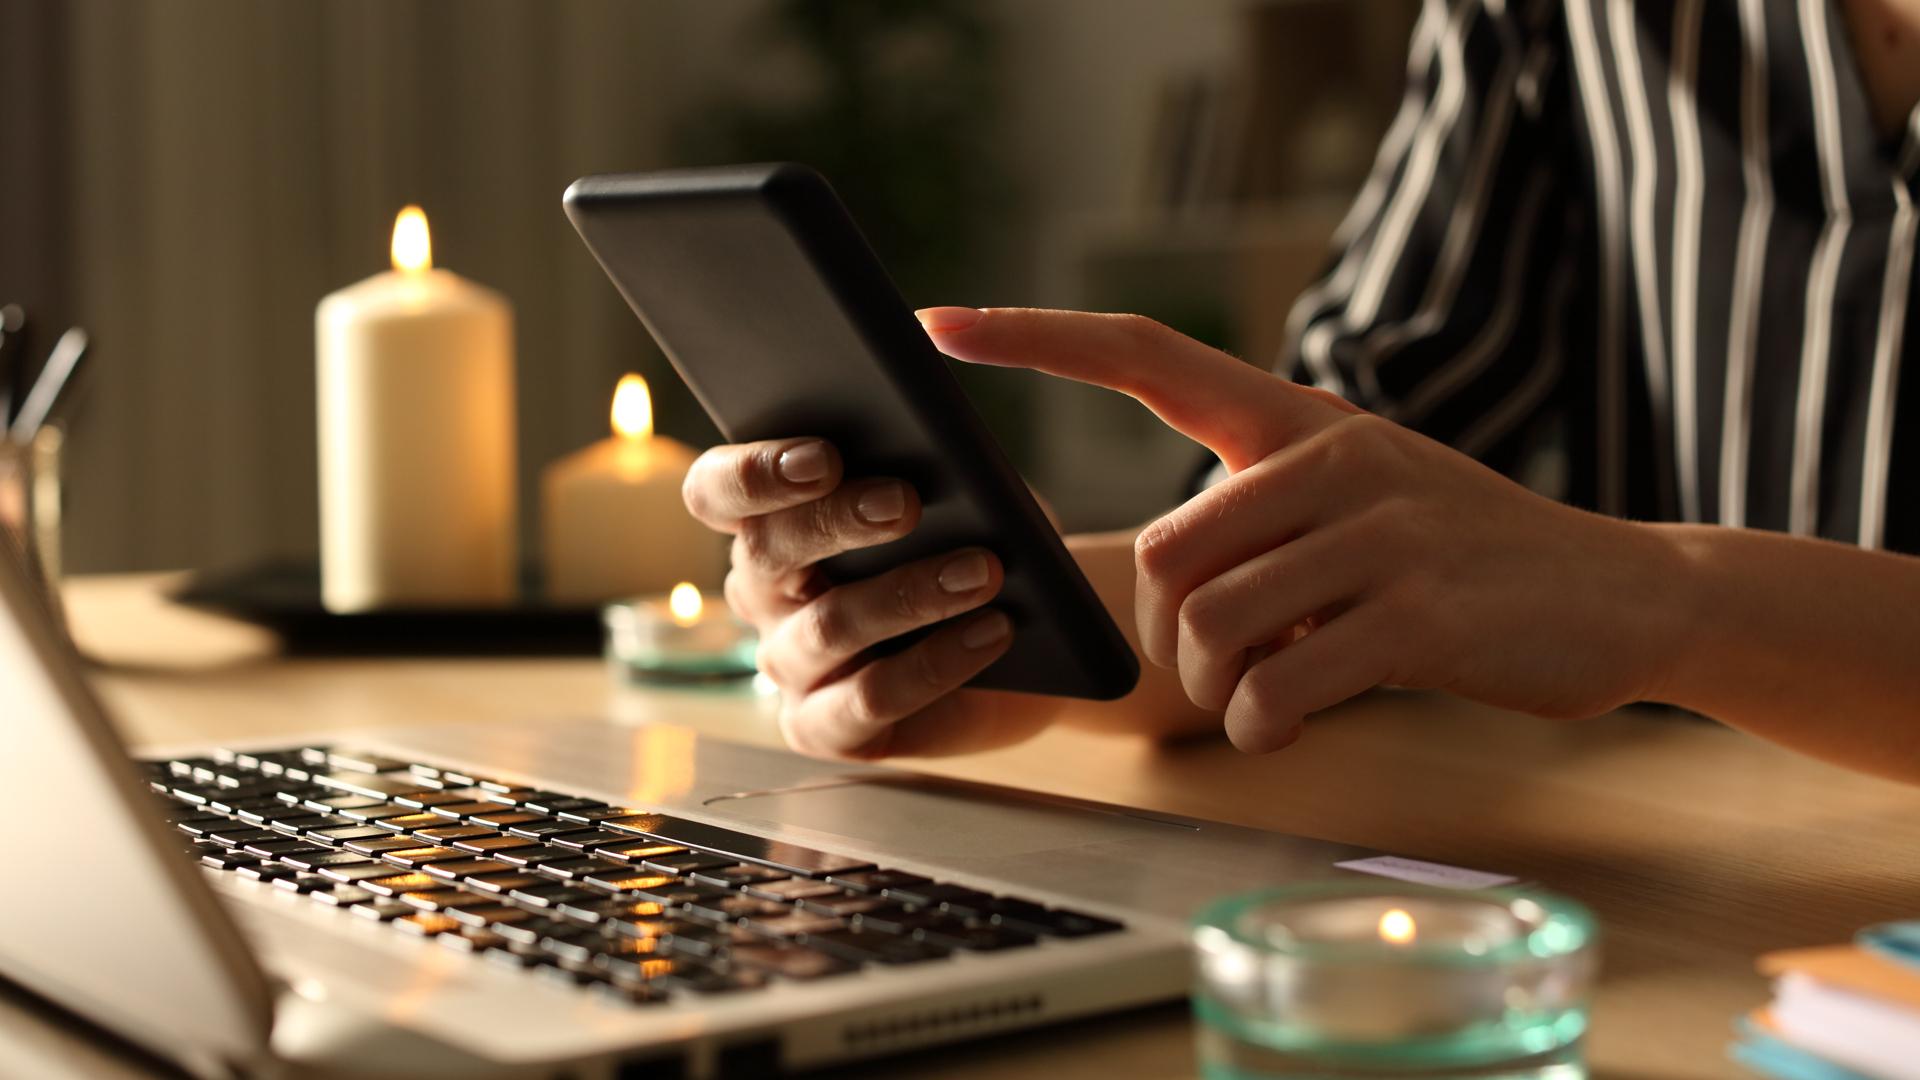 Närbild på en kvinnas händer som håller i en smartphone. Hon sitter vid en köksbord och på bordet syns en dator och några stearinljus.